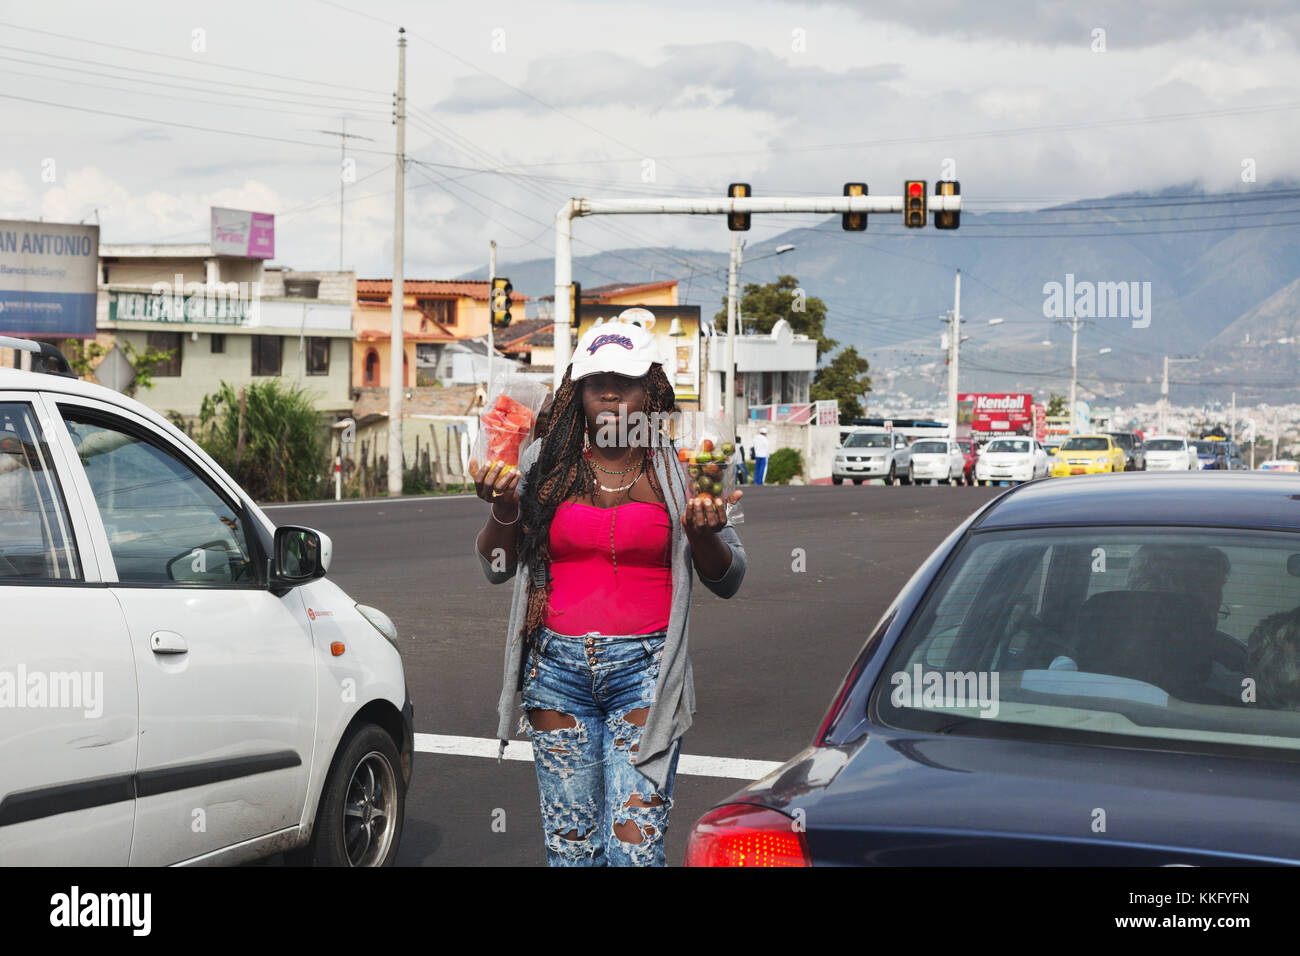 Une femme afro-équatorienne qui vend des marchandises aux conducteurs de voiture s'est arrêtée aux feux de signalisation, Équateur, Amérique du Sud Banque D'Images